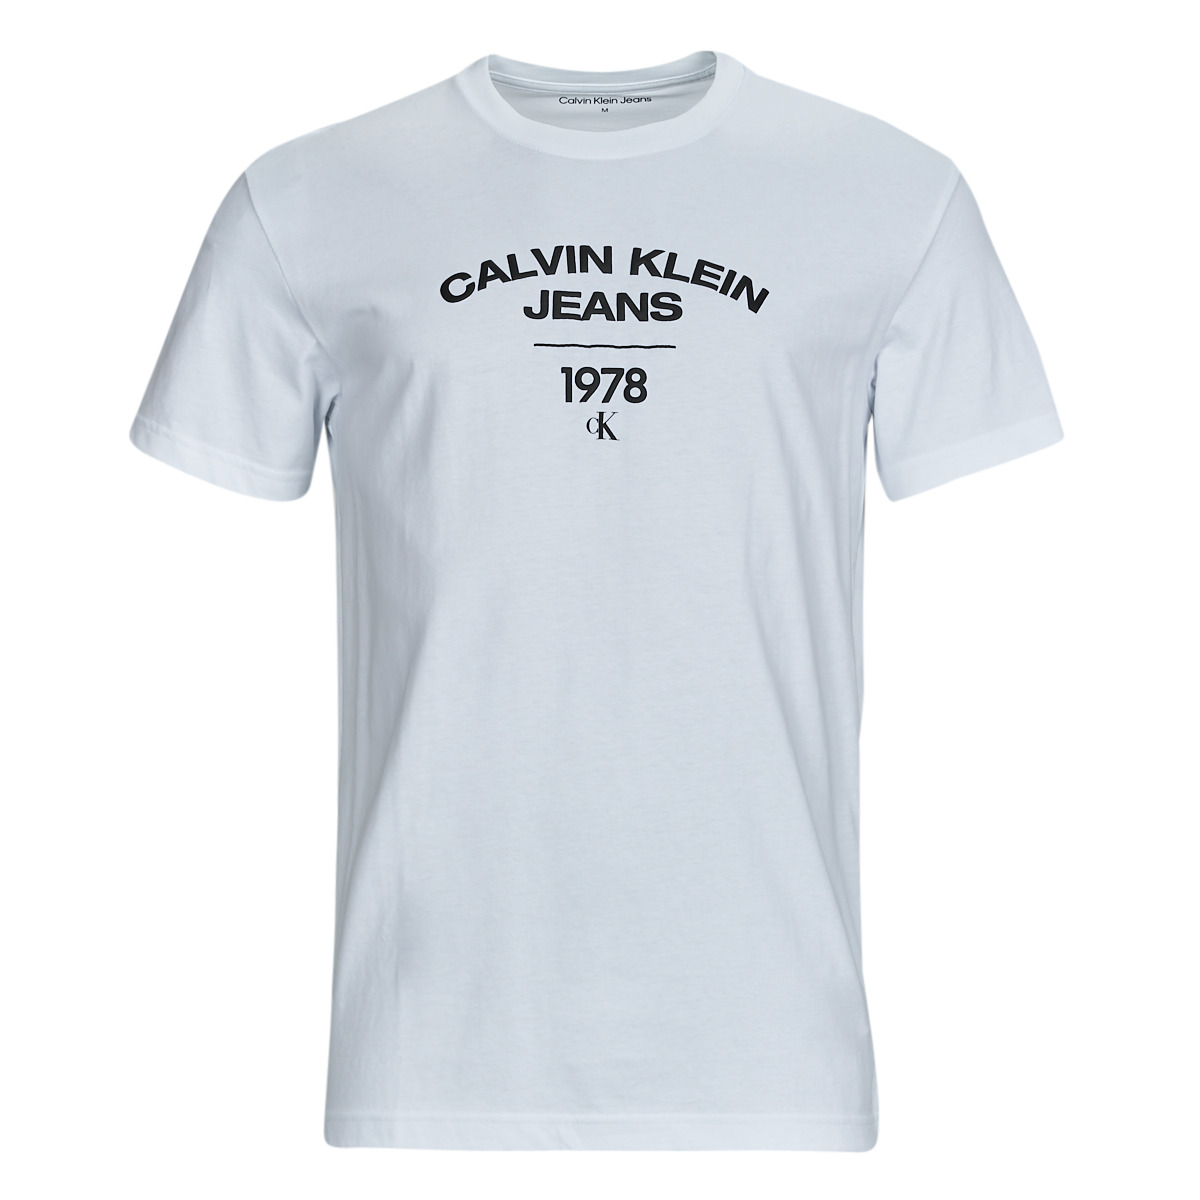 Calvin Klein Jeans VARSITY CURVE - LOGO € Herren ! Kleidung Weiss T-SHIRT | Versand Spartoo.de 24,43 Kostenloser - T-Shirts